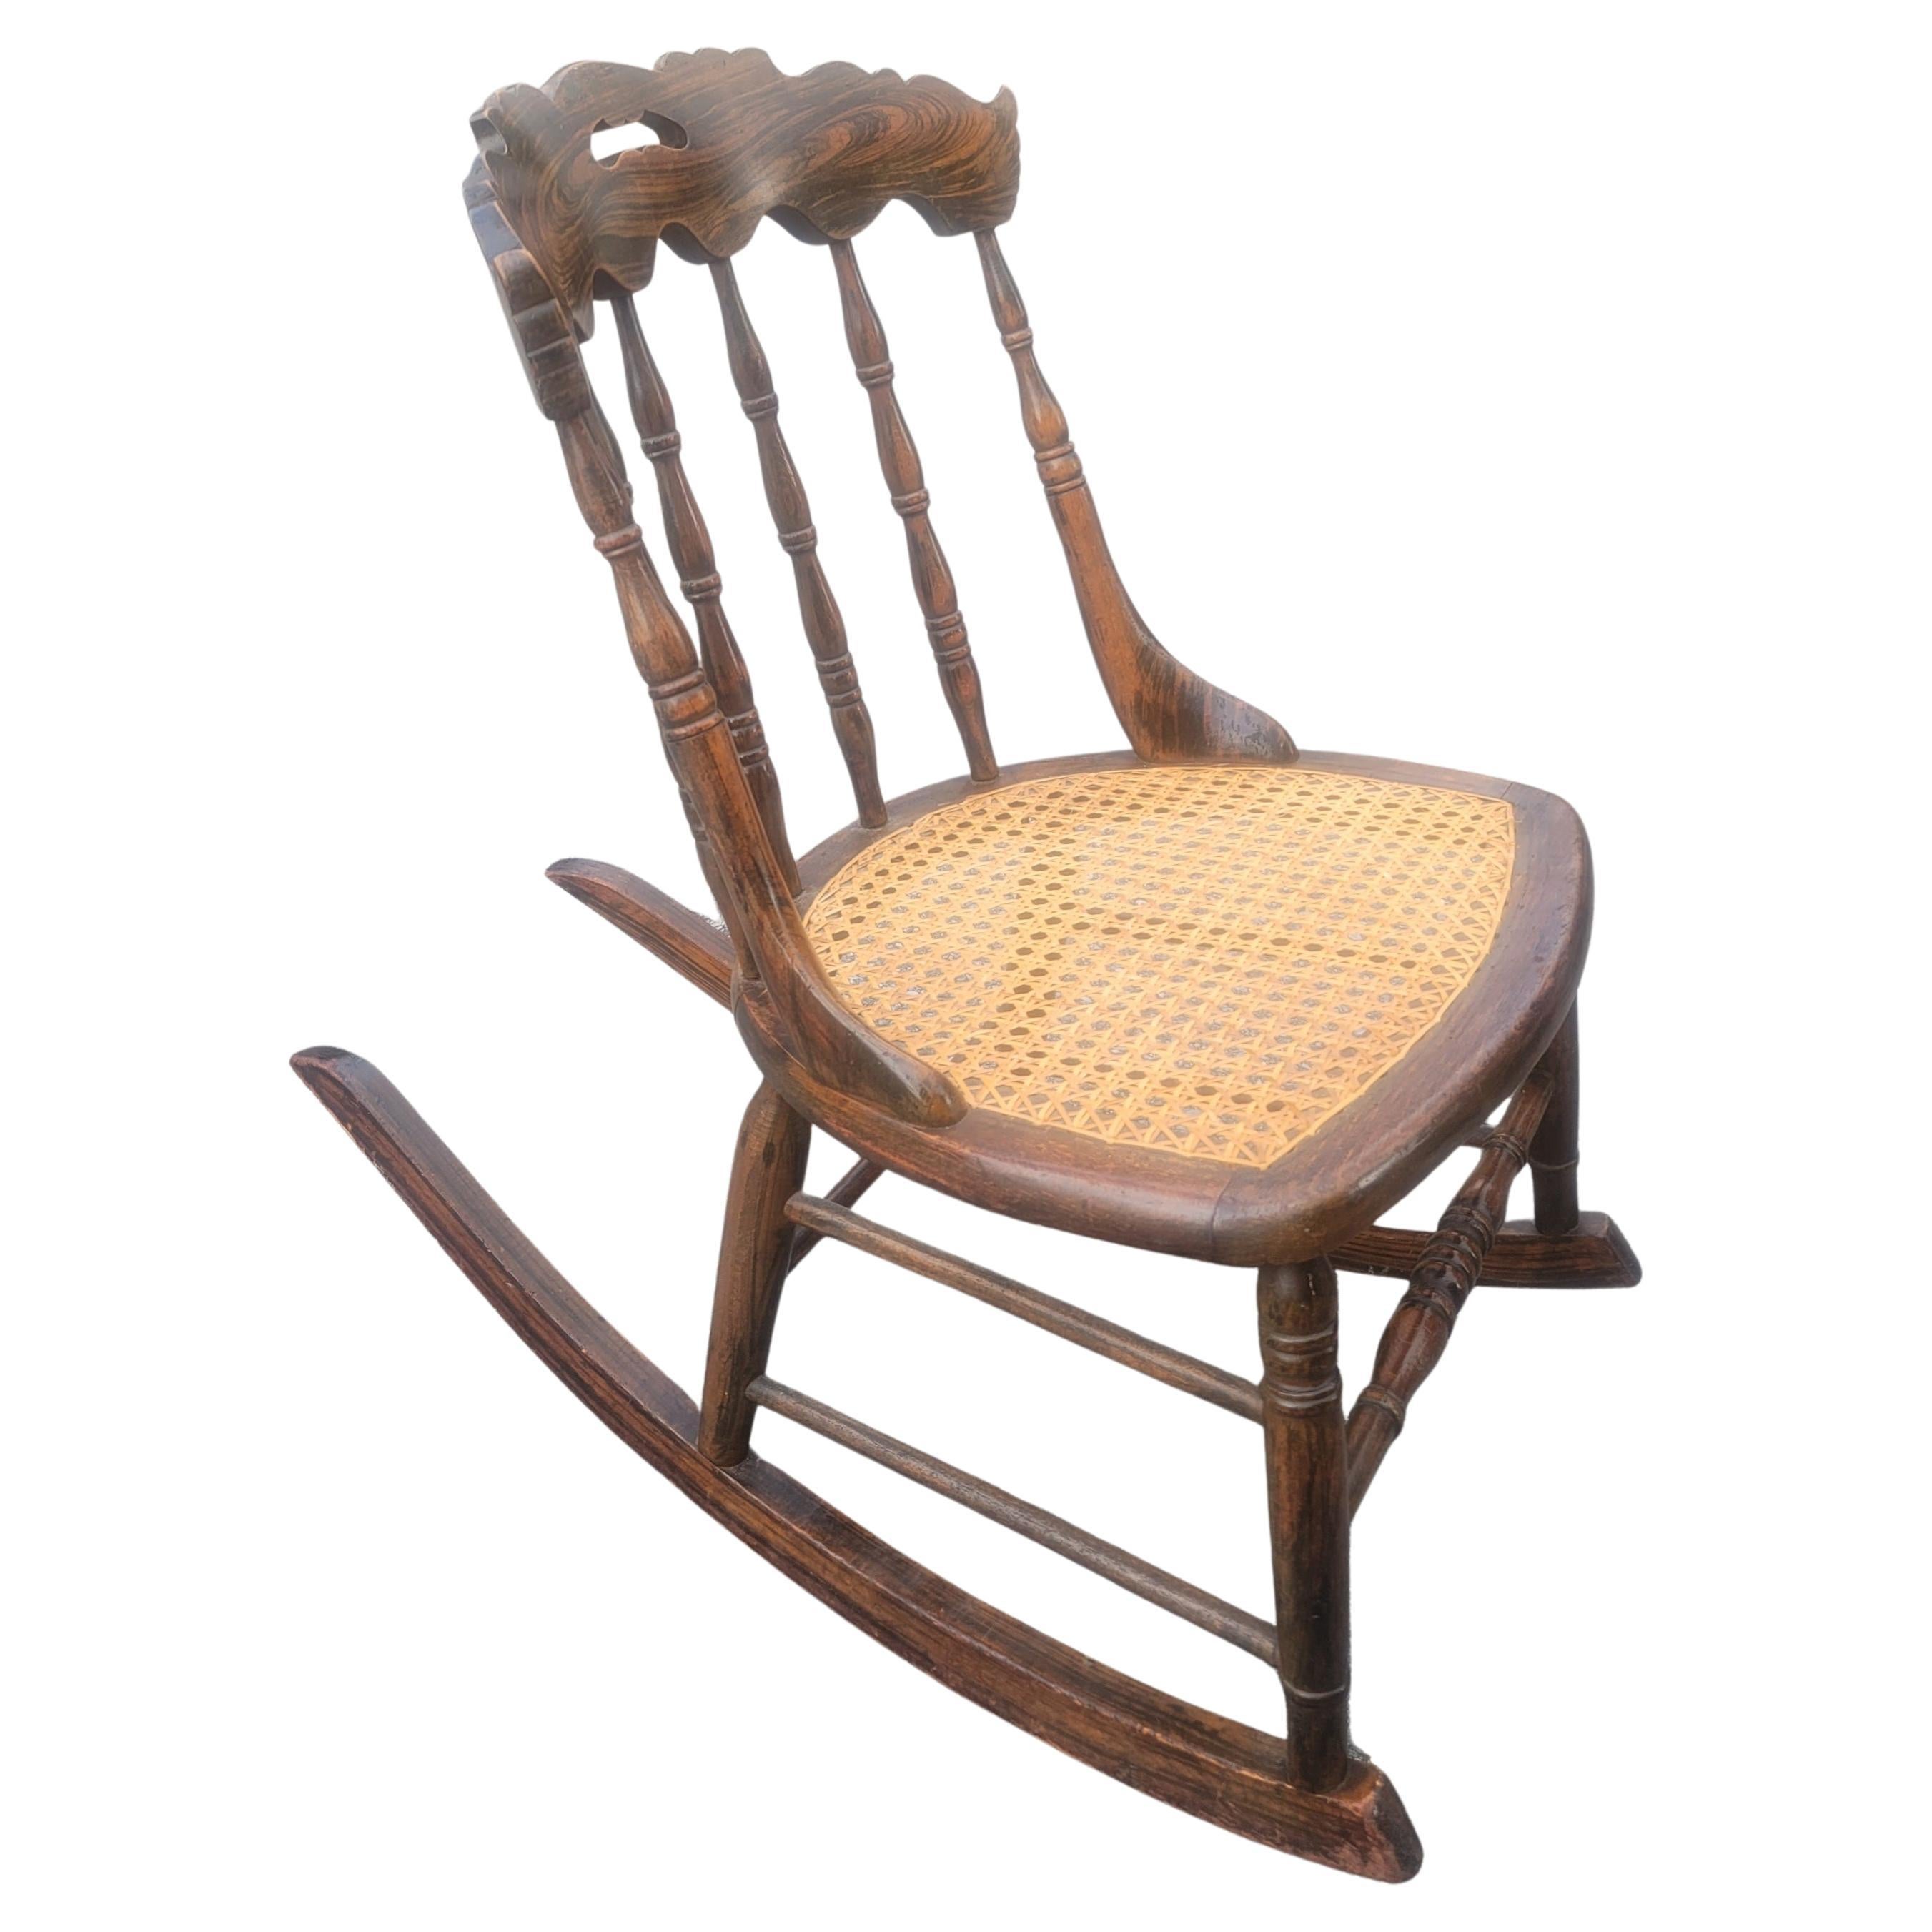 Ein exquisiter mittelgroßer Vintage-Schaukelstuhl aus Nussbaum und Rohrsitz in Tigernuss. Neuere Stockschläge. In sehr gutem Vintage-Zustand.